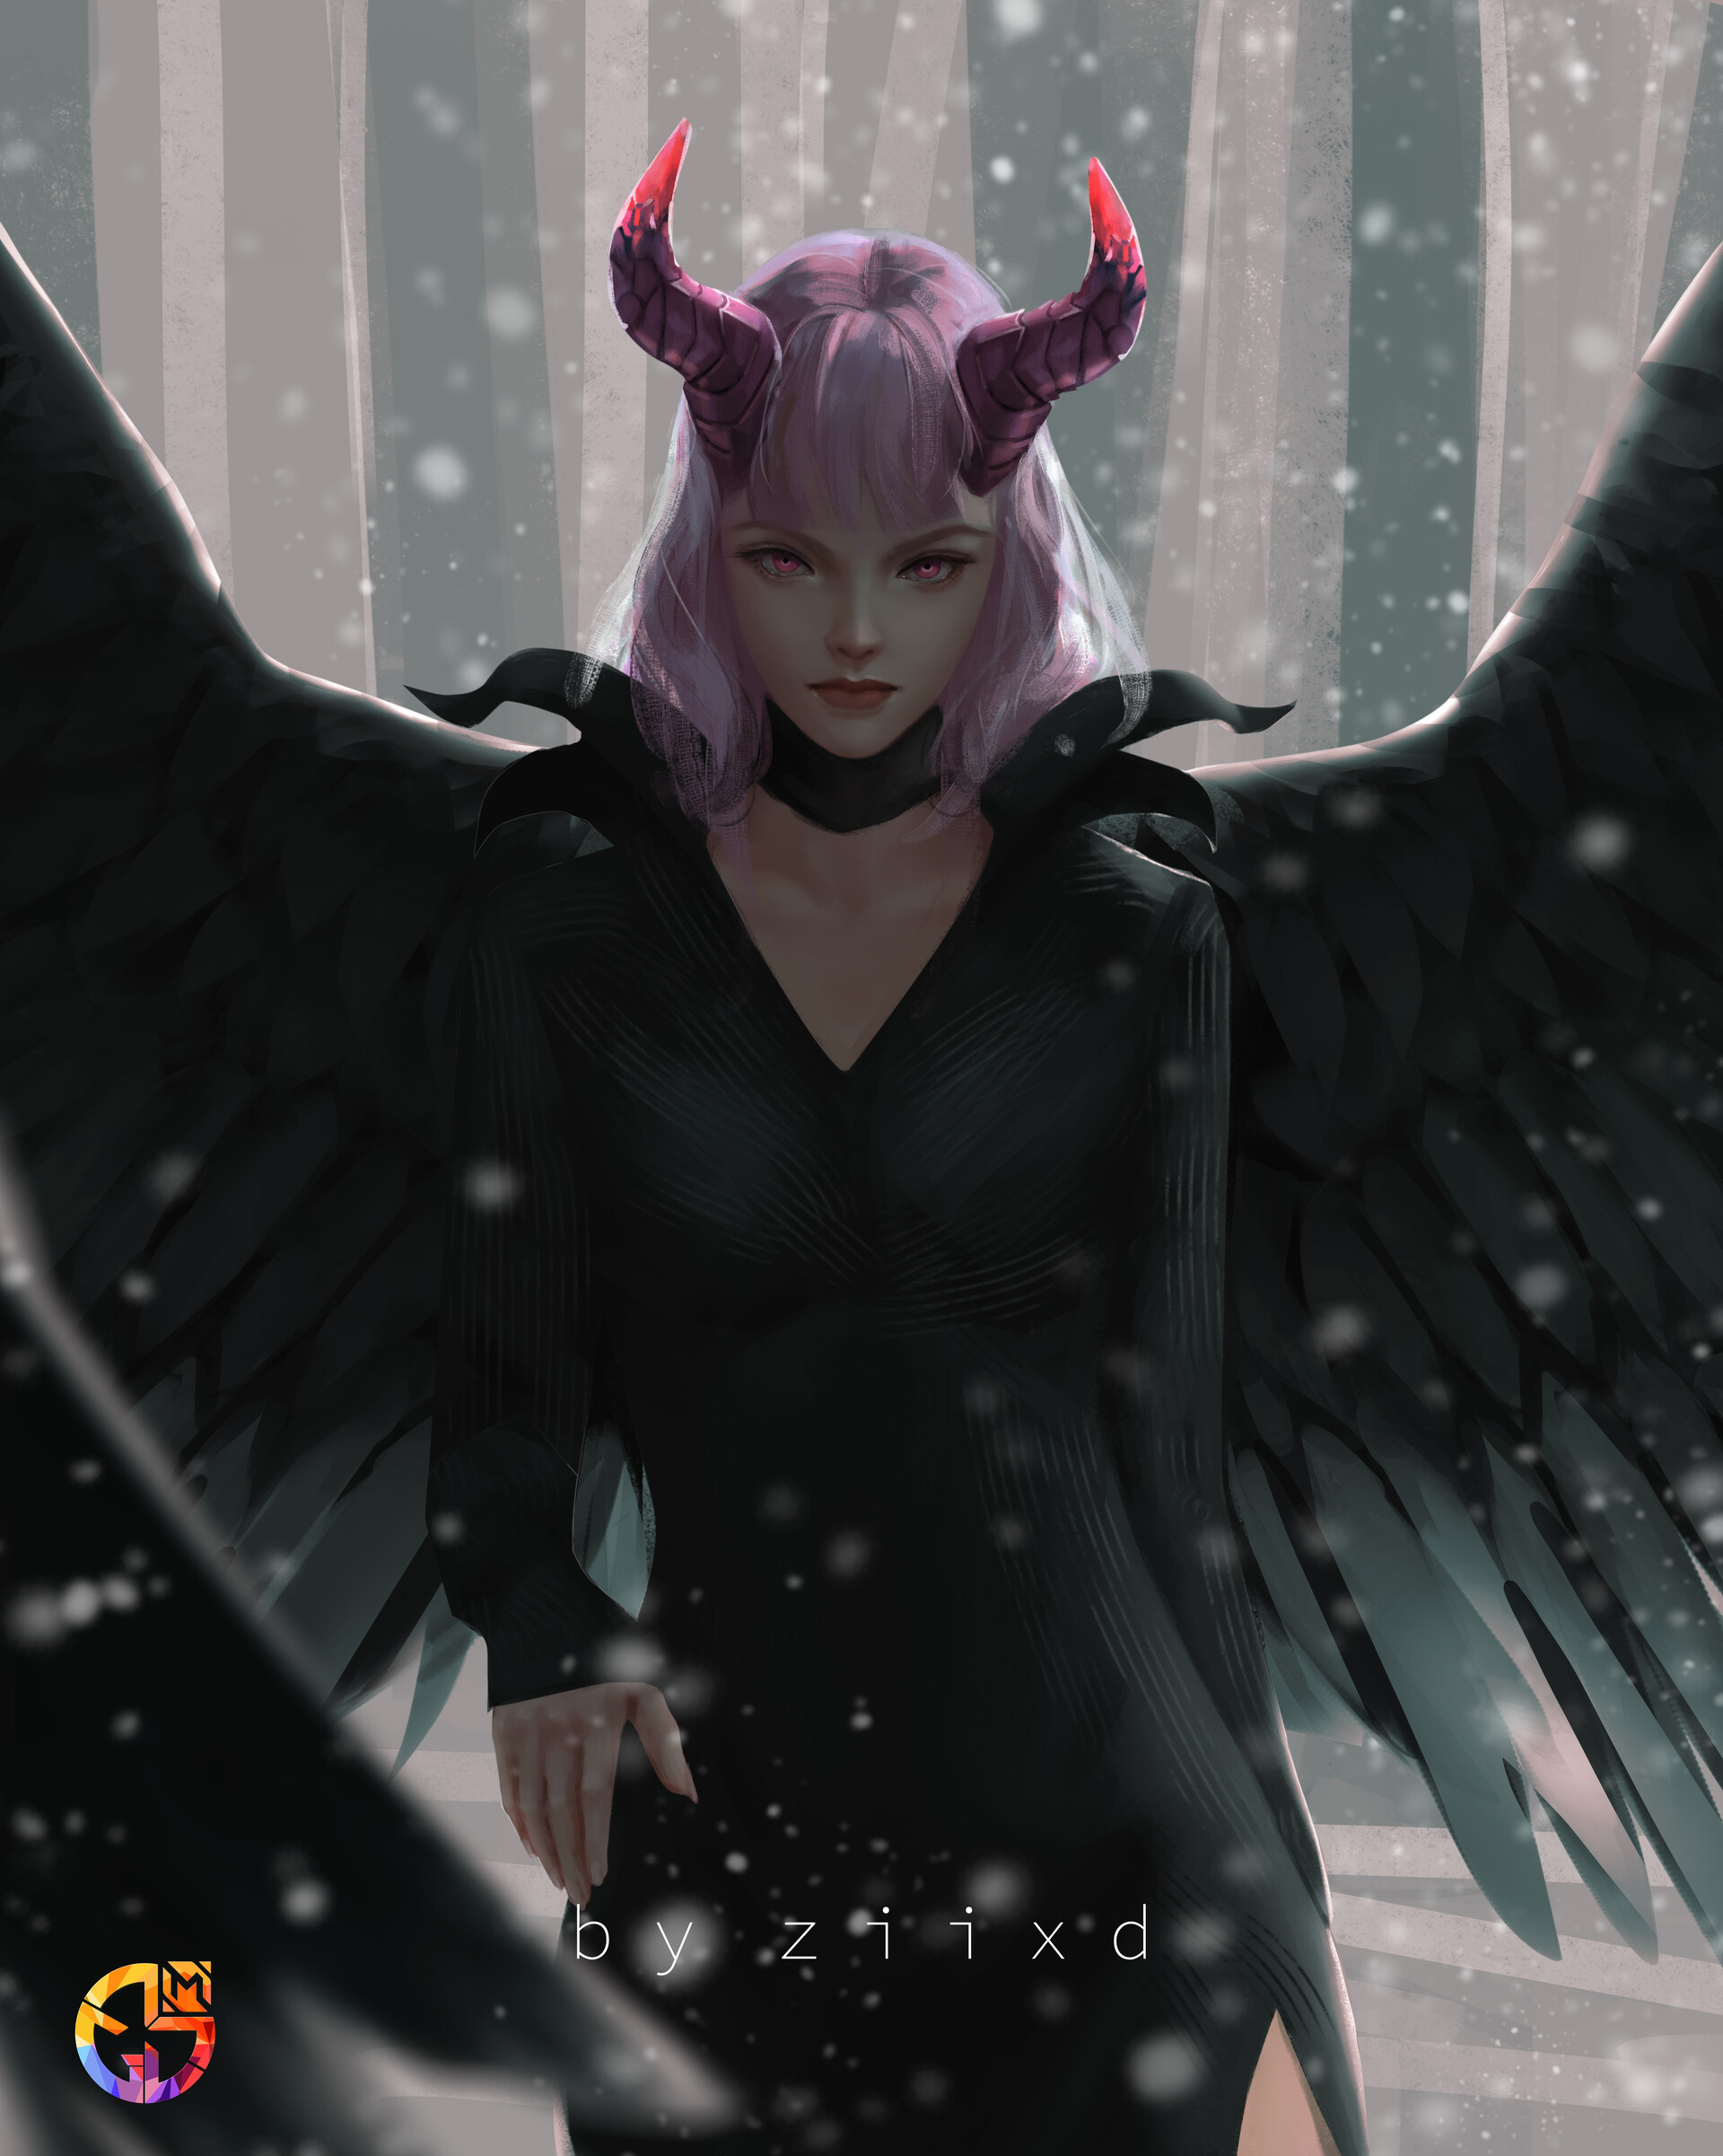 General 1920x2402 ziixd digital art digital painting artwork pink hair black clothing wings black wings women Maleficent